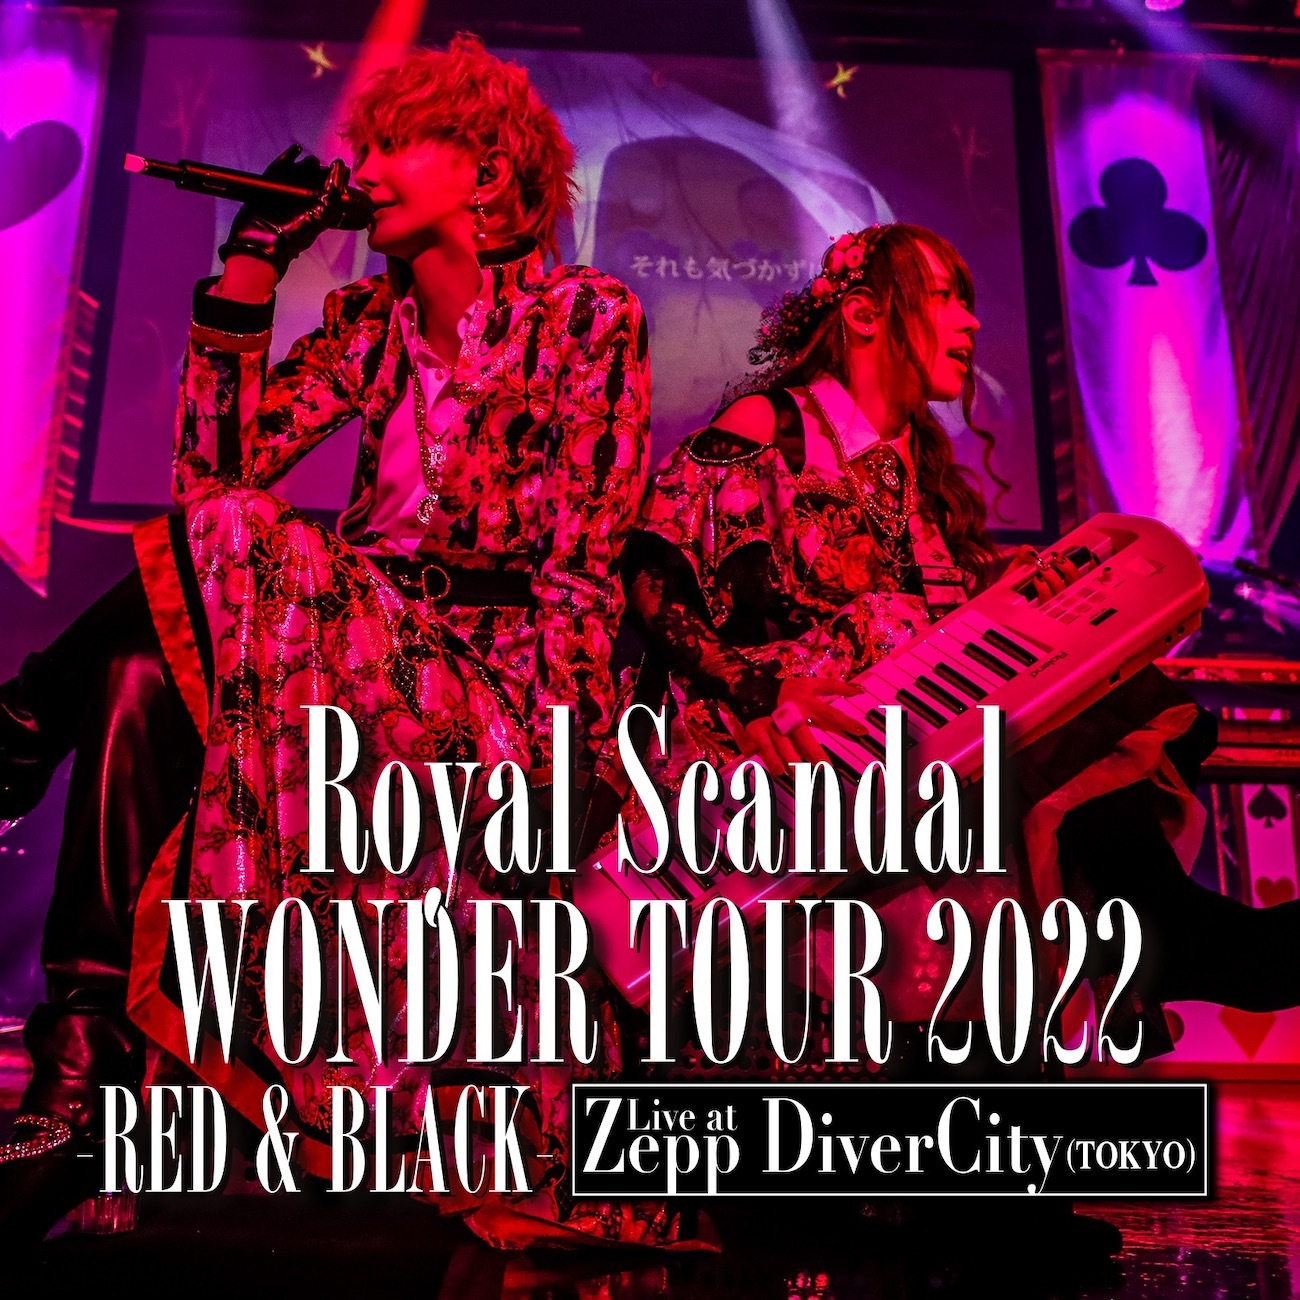 『Royal Scandal WONDER TOUR 2022 -RED & BLACK- Live at Zepp DiverCity(TOKYO)』